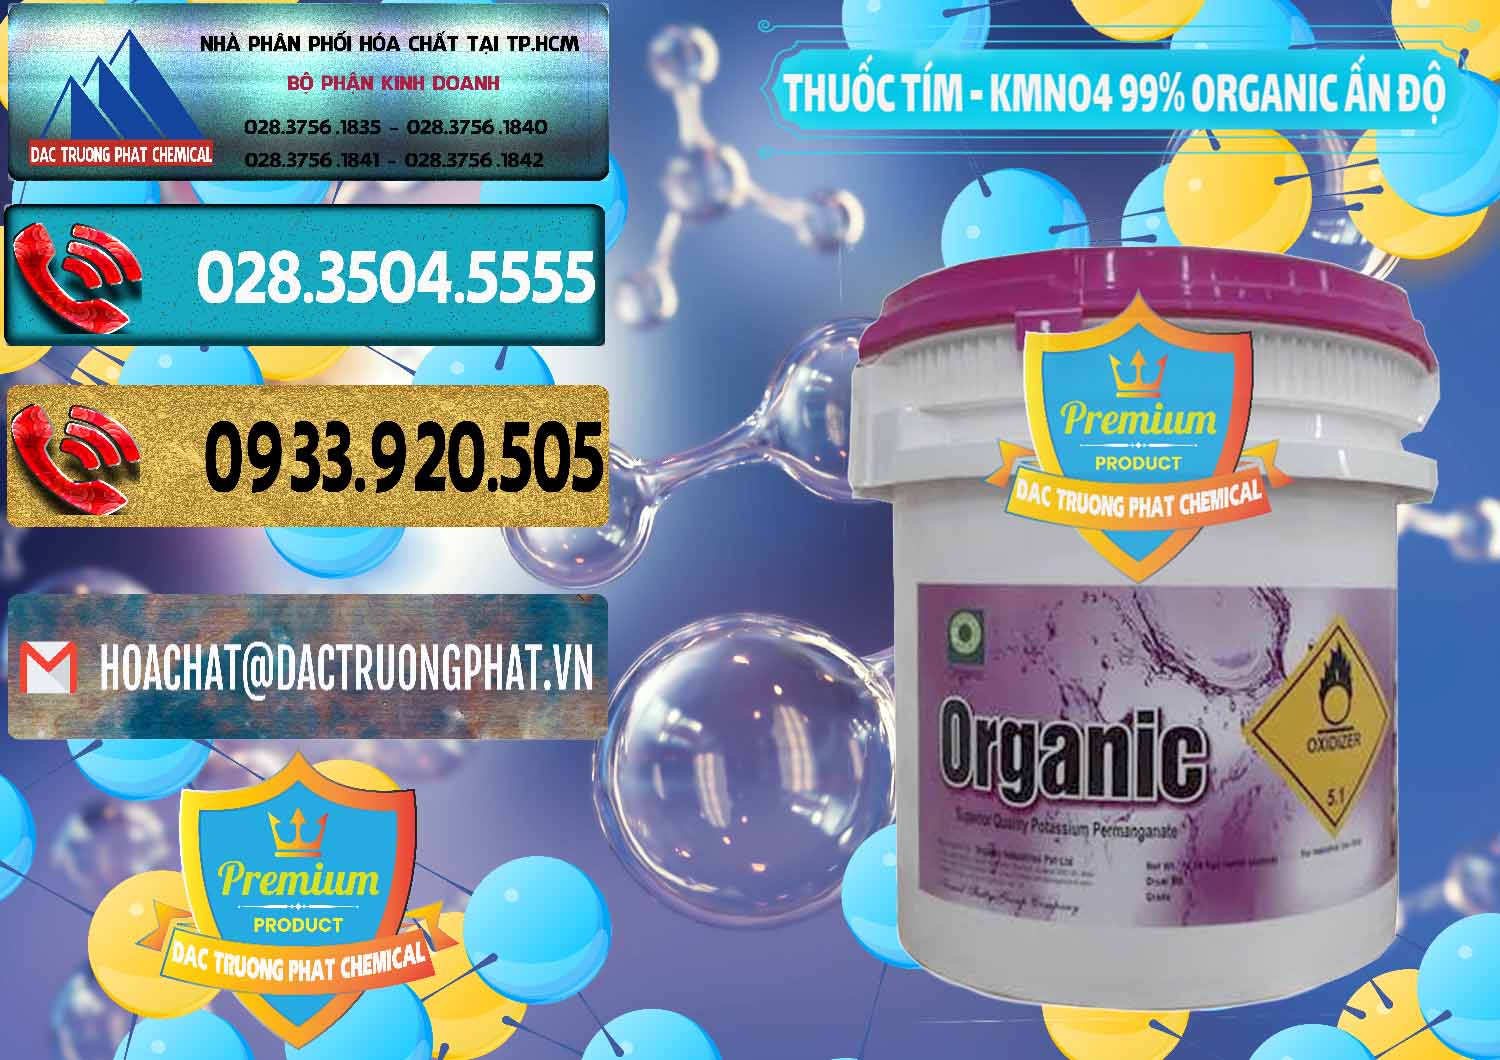 Công ty chuyên bán và cung cấp Thuốc Tím - KMNO4 99% Organic Ấn Độ India - 0216 - Chuyên phân phối _ cung ứng hóa chất tại TP.HCM - hoachatdetnhuom.com